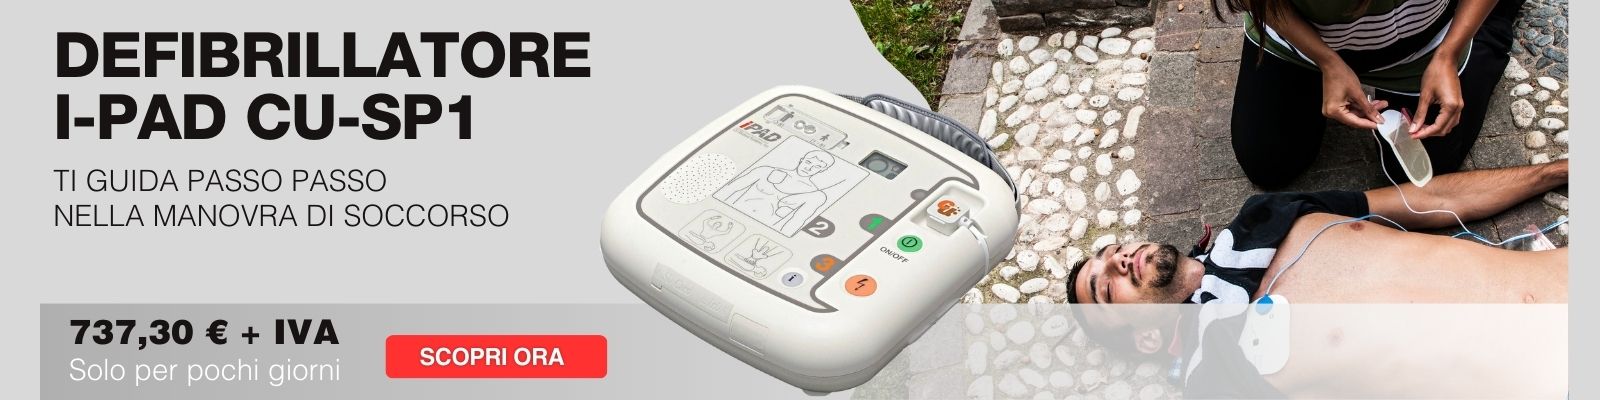 Defibrillatore i-pad cu-sp1